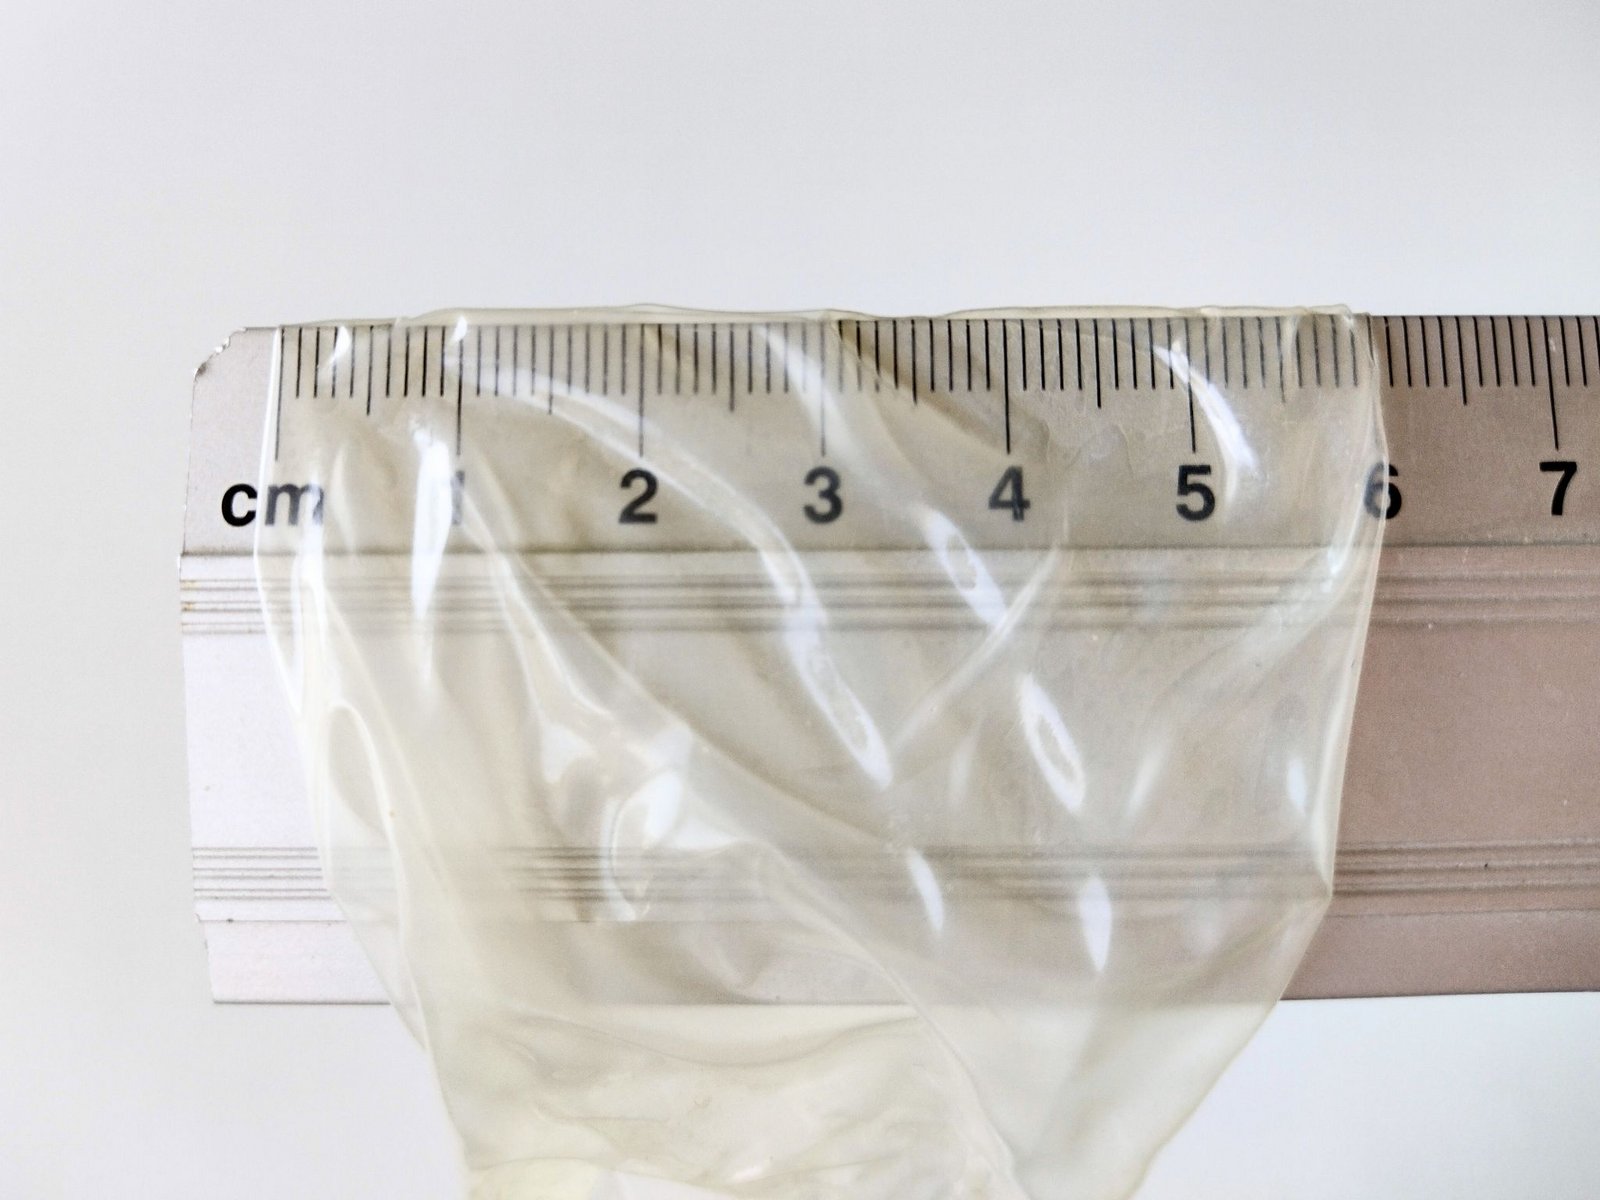 Kondomens nominella bredd mätt med en linjal